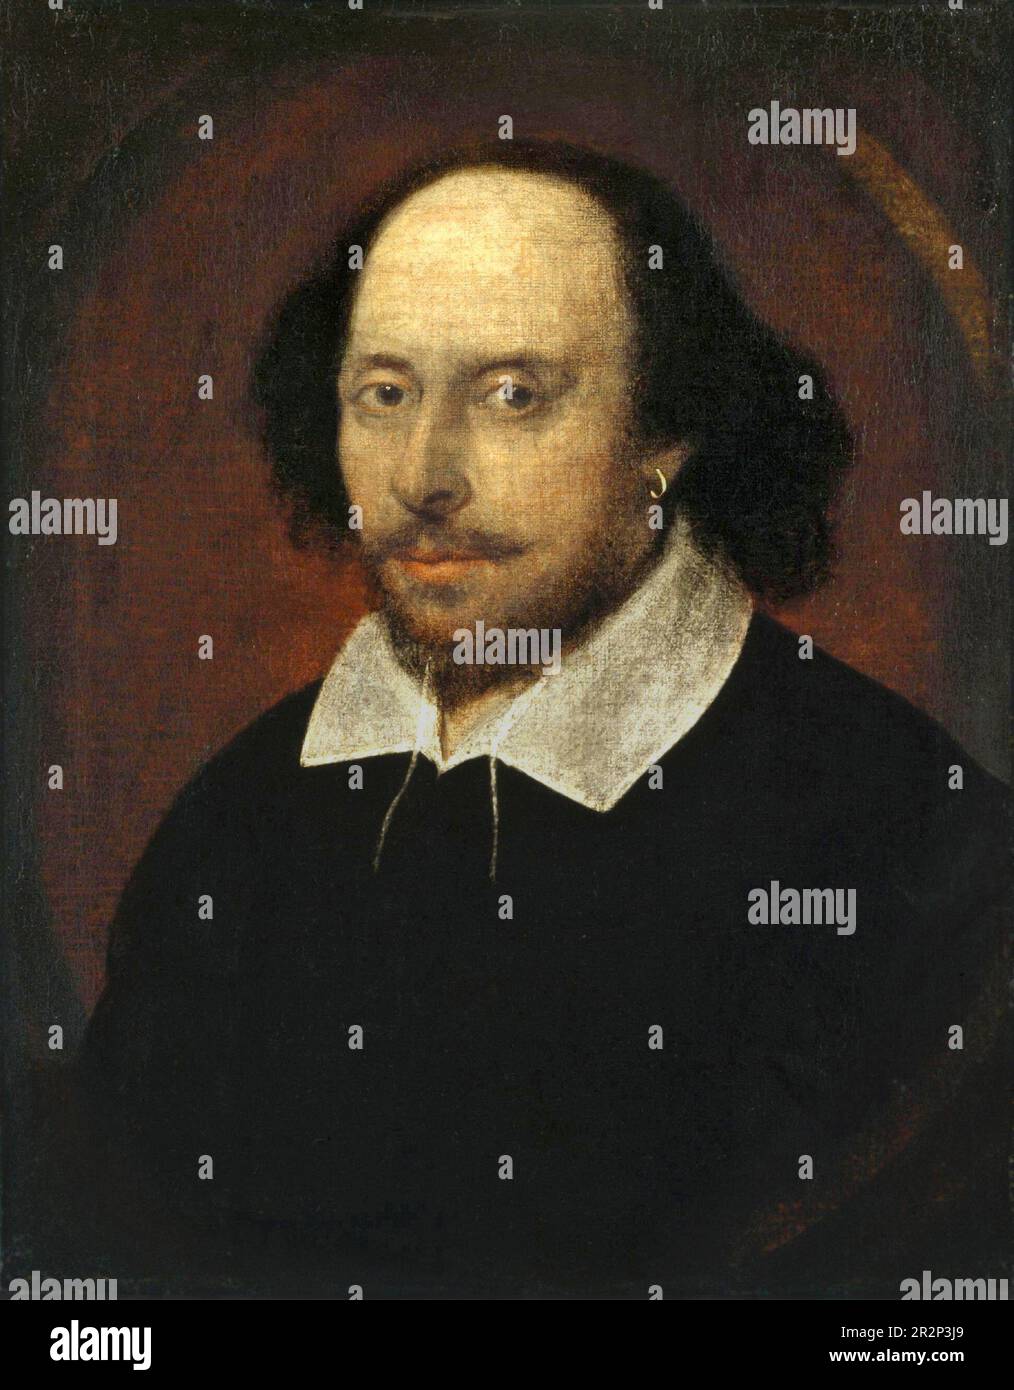 Das Chandos-Porträt. Das Porträt von William Shakespeare (1564-1616). John Taylor zugeschrieben. 1610. Stockfoto